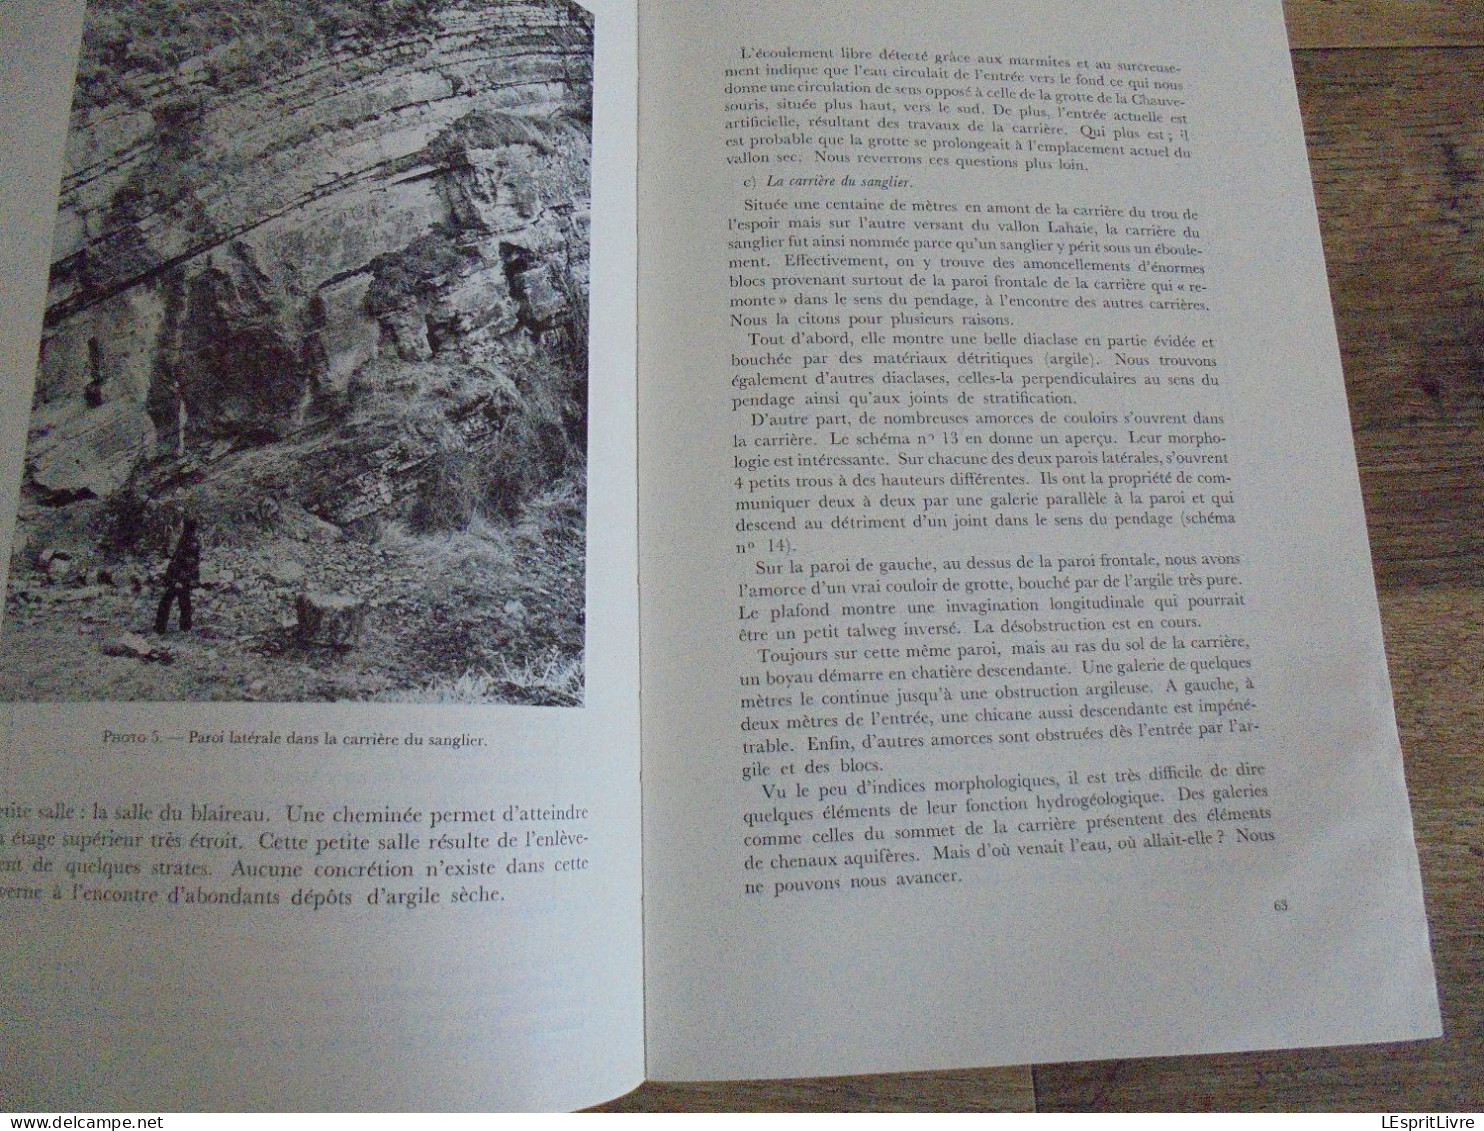 LES NATURALISTES BELGES N° 1 Année 1974 Régionalisme Grotte Vaucelles Carrières Pierres Carrière du Sanglier Gimnée